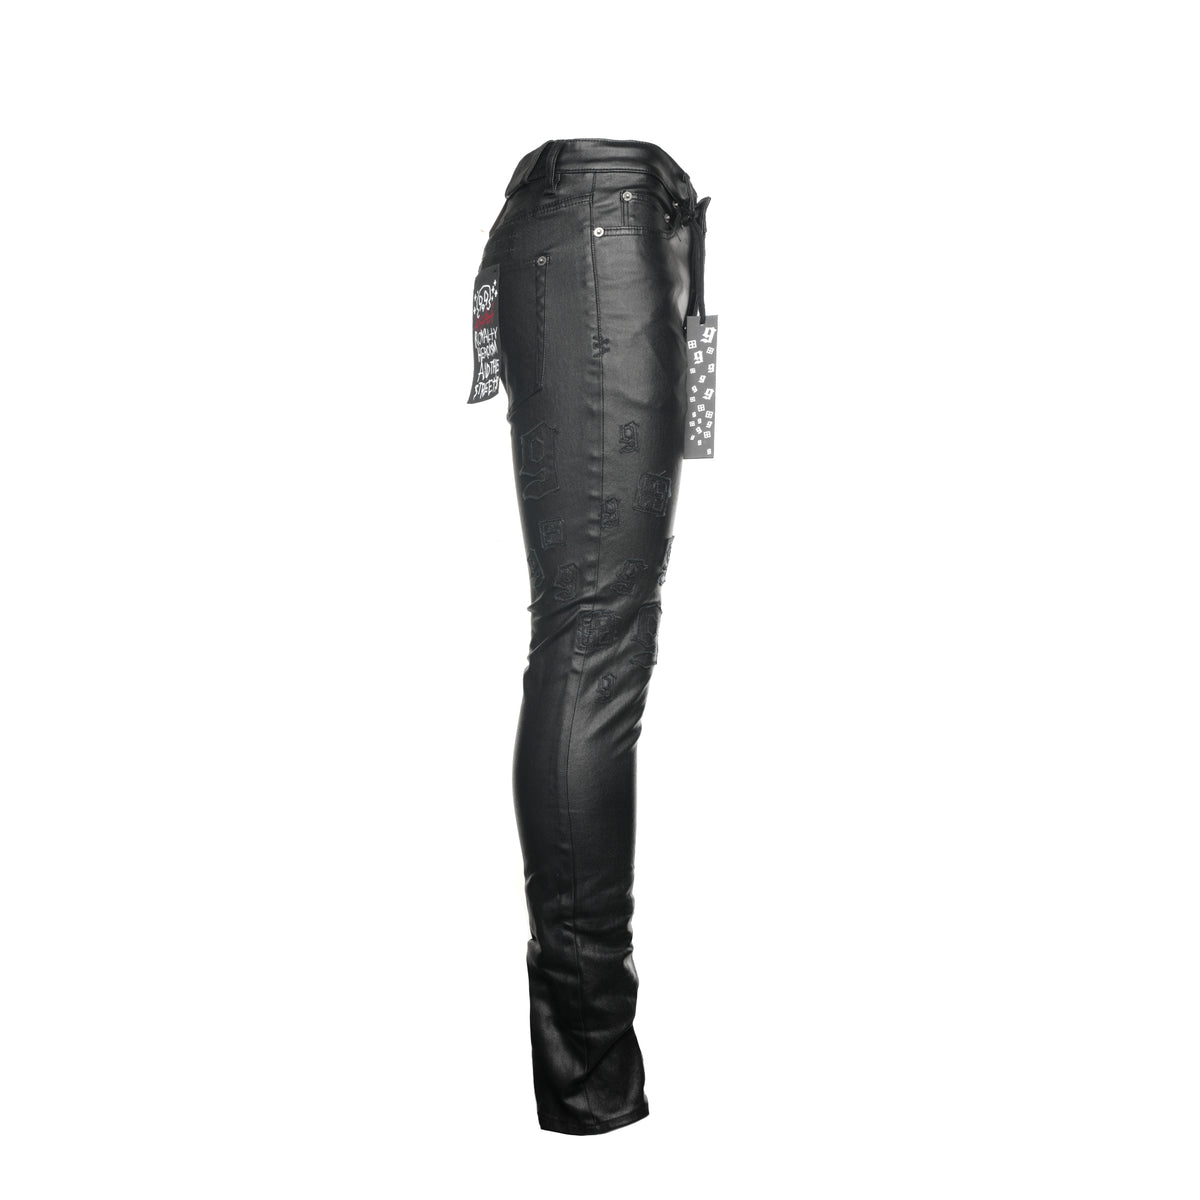 Ksubi Chitch 999 Black Wax Men's Jeans - SIZE Boutique